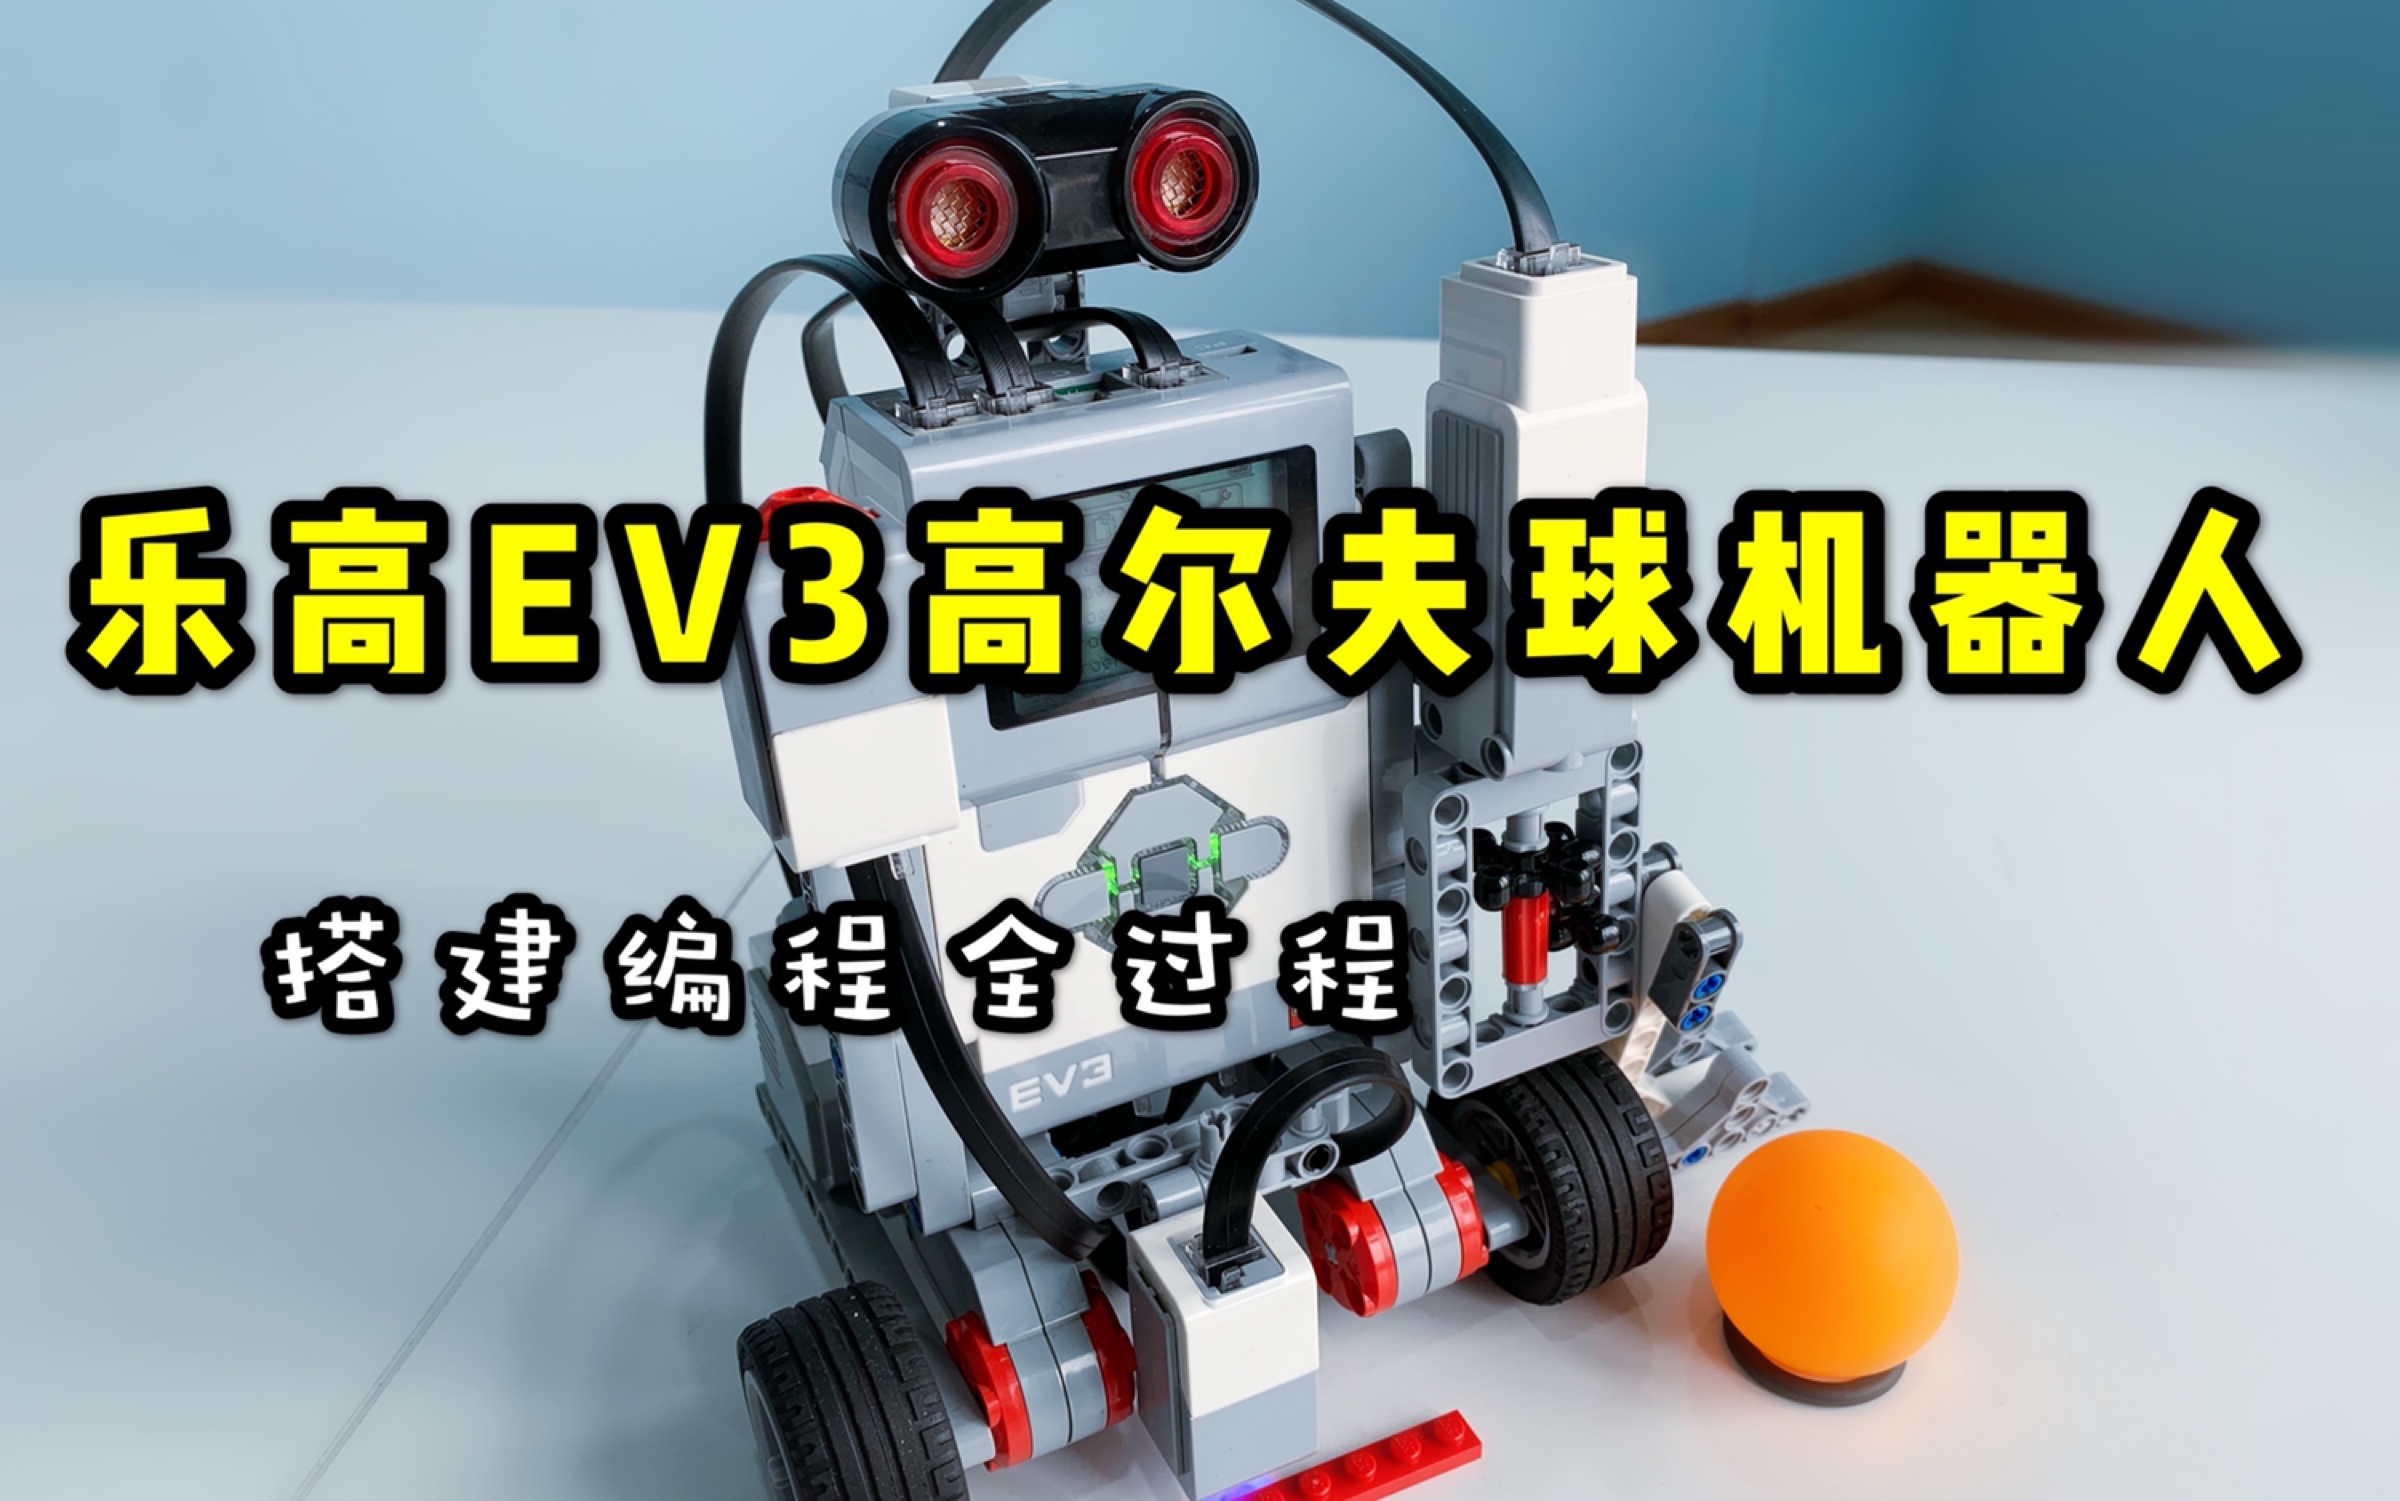 乐高ev3高尔夫机器人搭建编程全过程